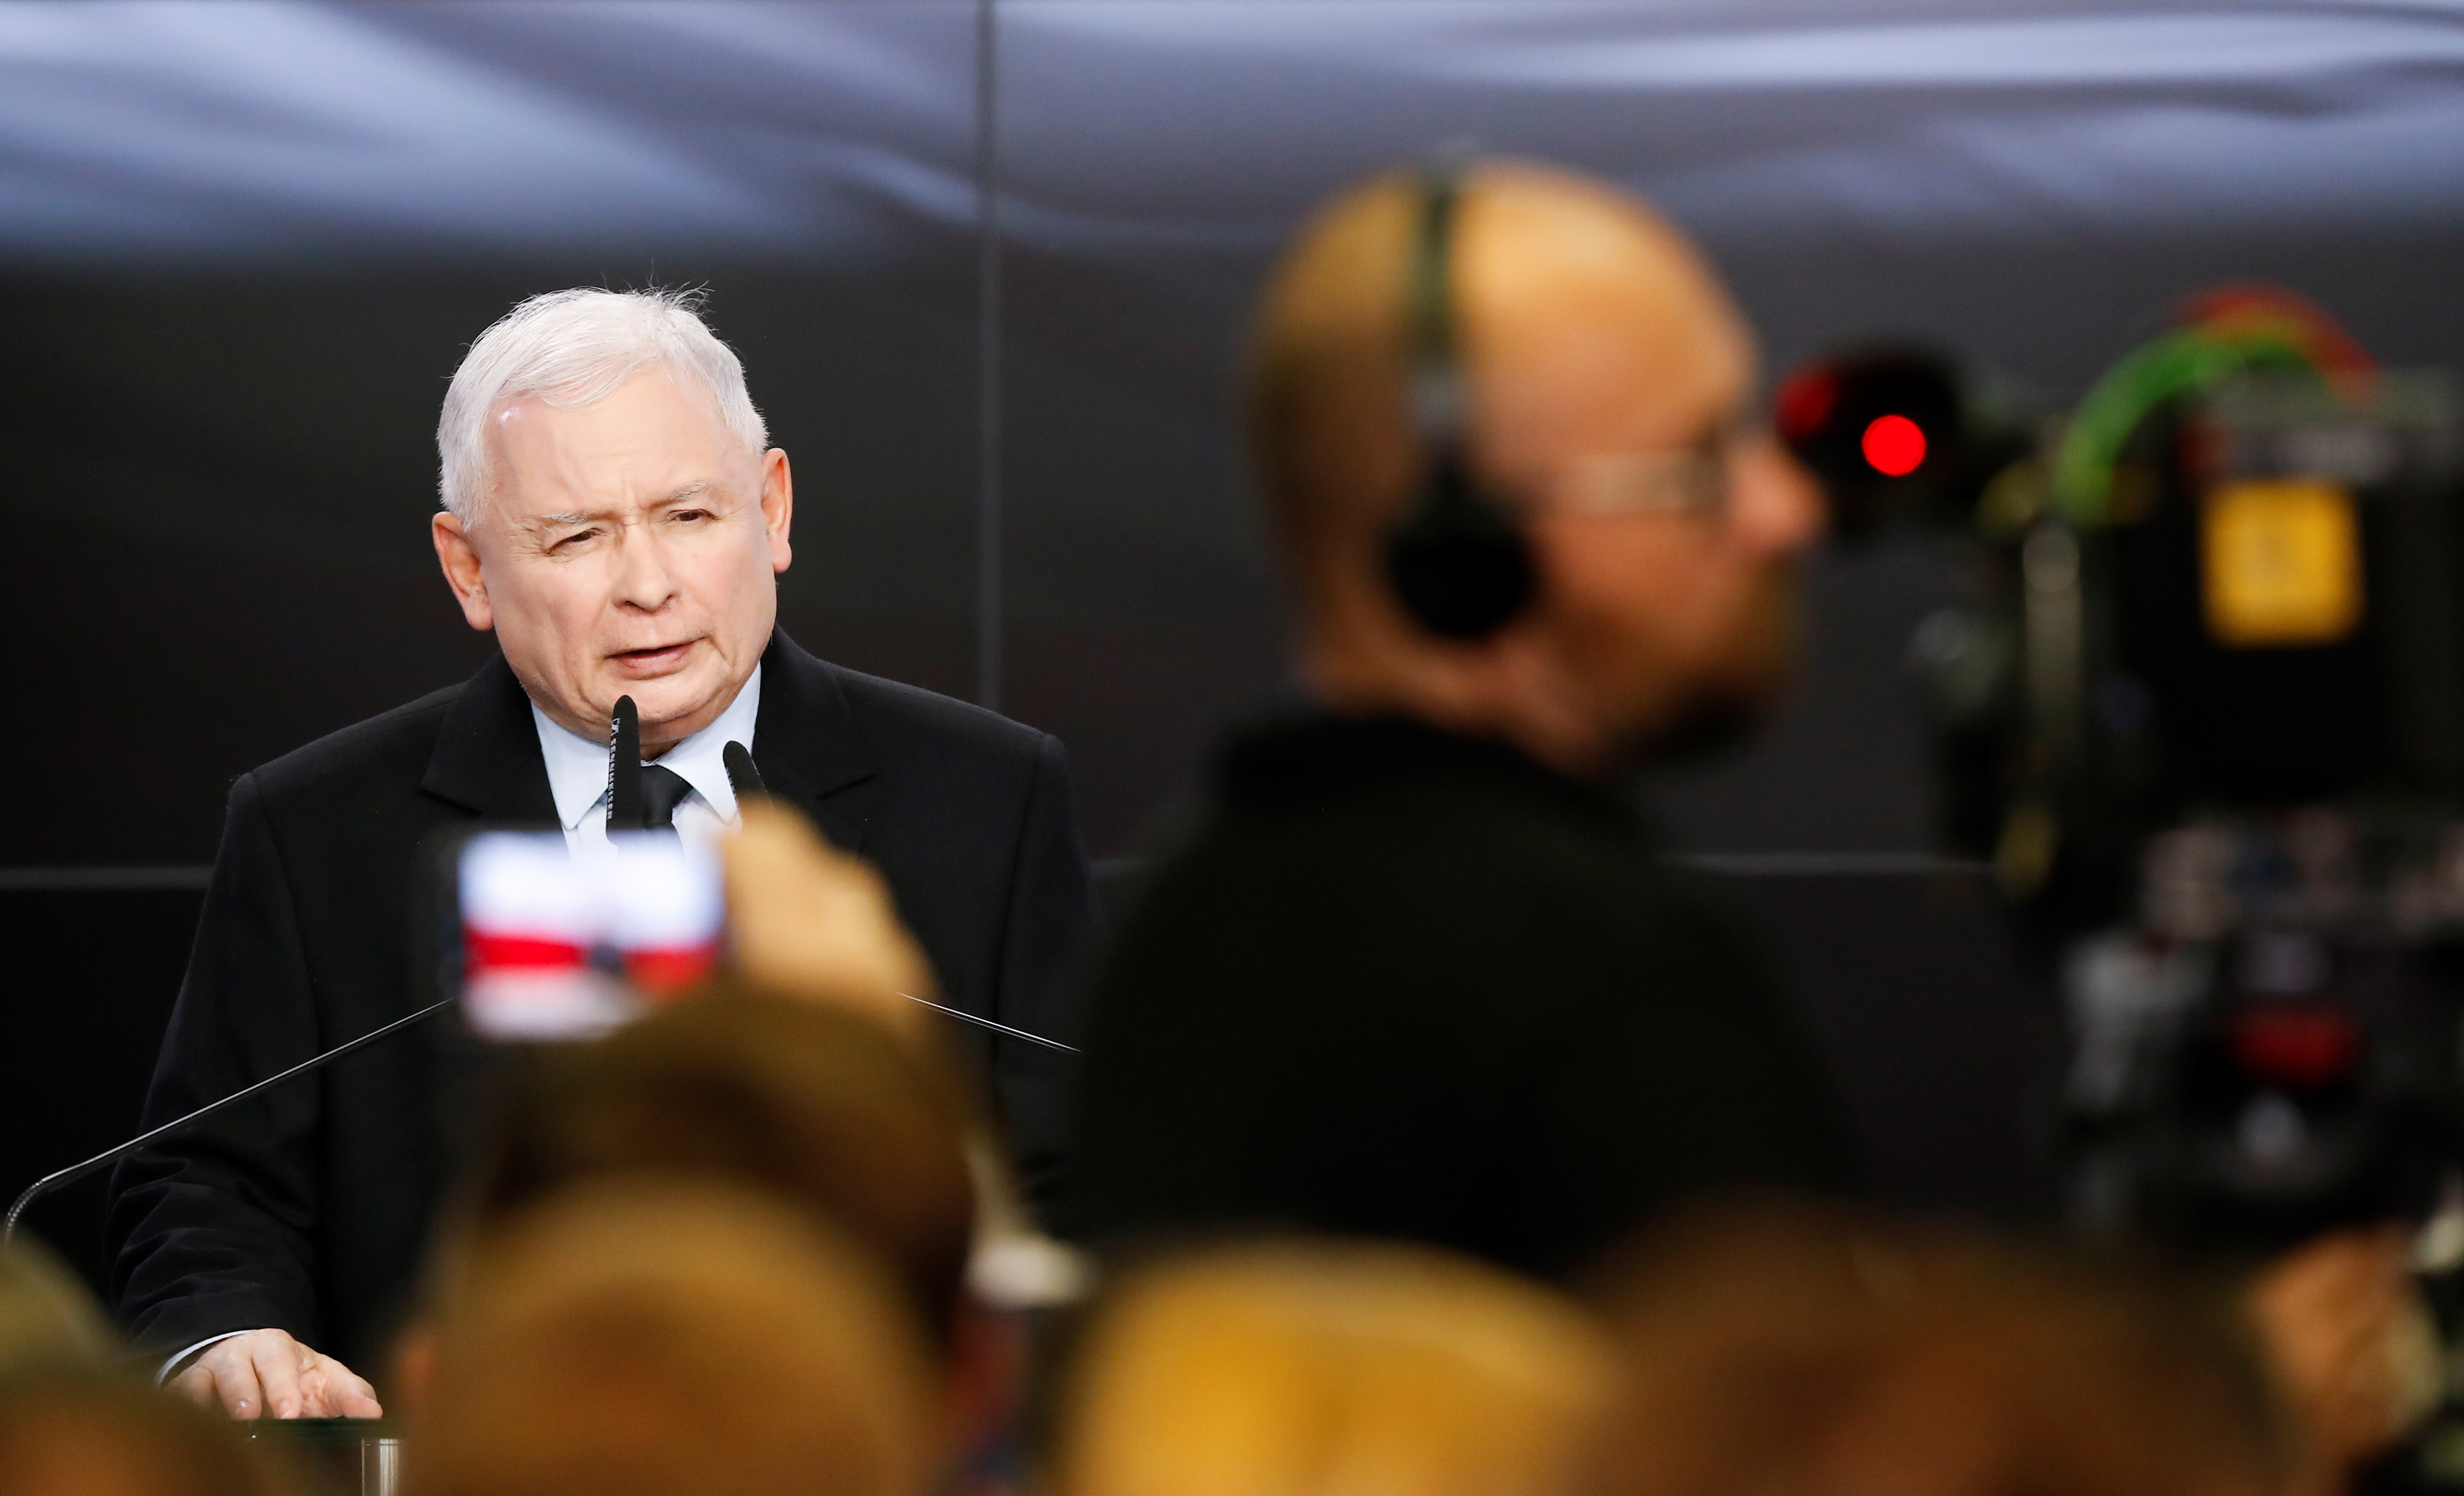 Εκλογές στην Πολωνία: Το κυβερνών εθνικιστικό Κόμμα οδεύει σε μεγάλη νίκη